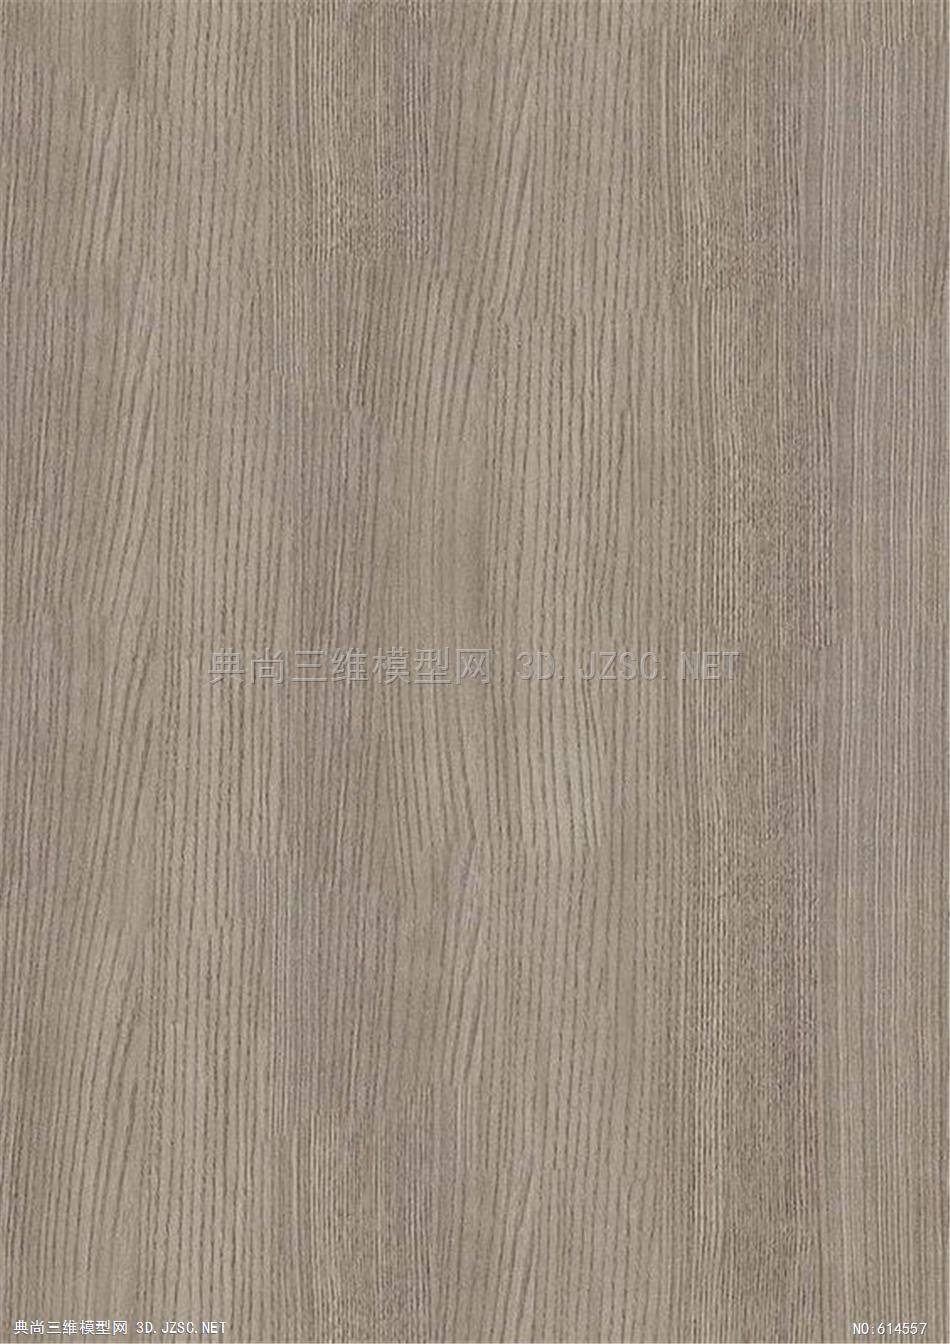 木饰面 木纹 木材  高清材质贴图 (341)